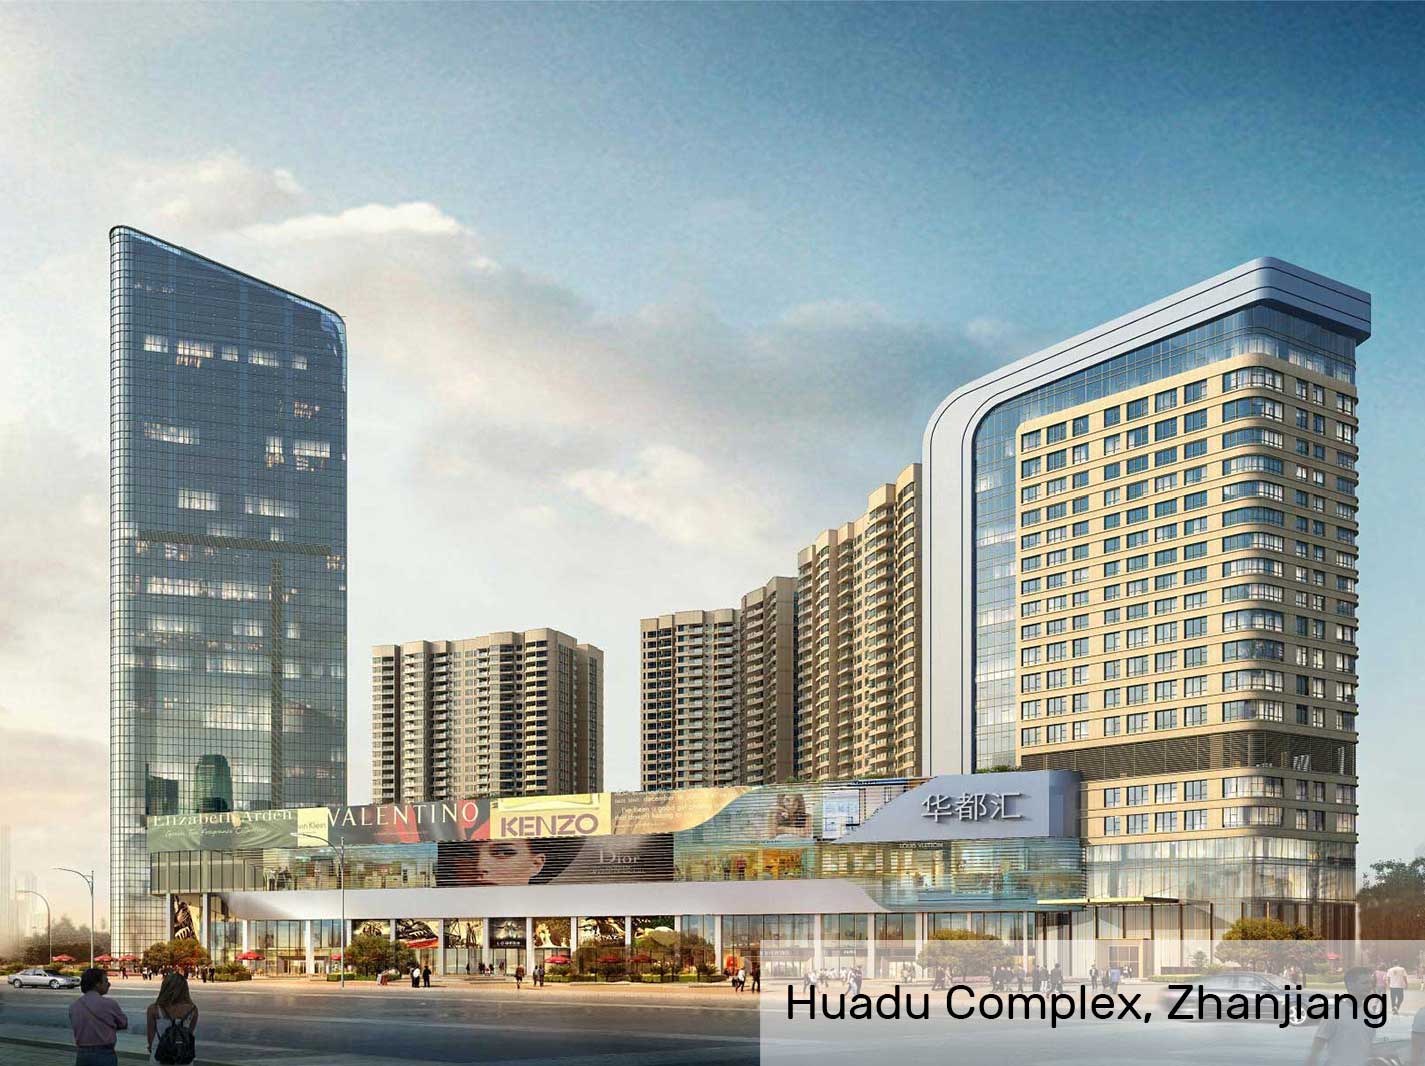 Complejo Huadu, Zhanjiang